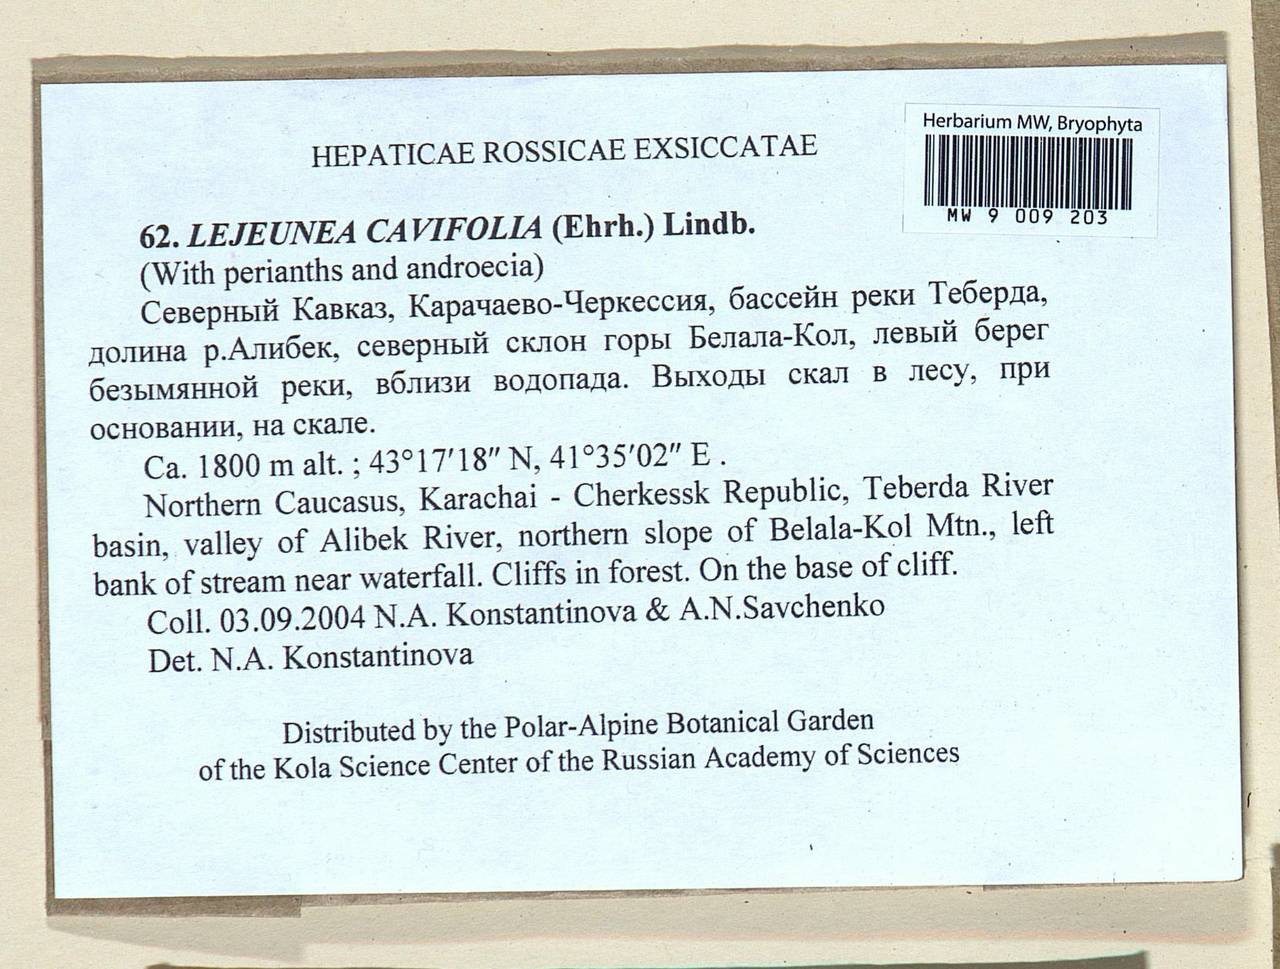 Lejeunea cavifolia (Ehrh.) Lindb., Гербарий мохообразных, Мхи - Северный Кавказ и Предкавказье (B12) (Россия)